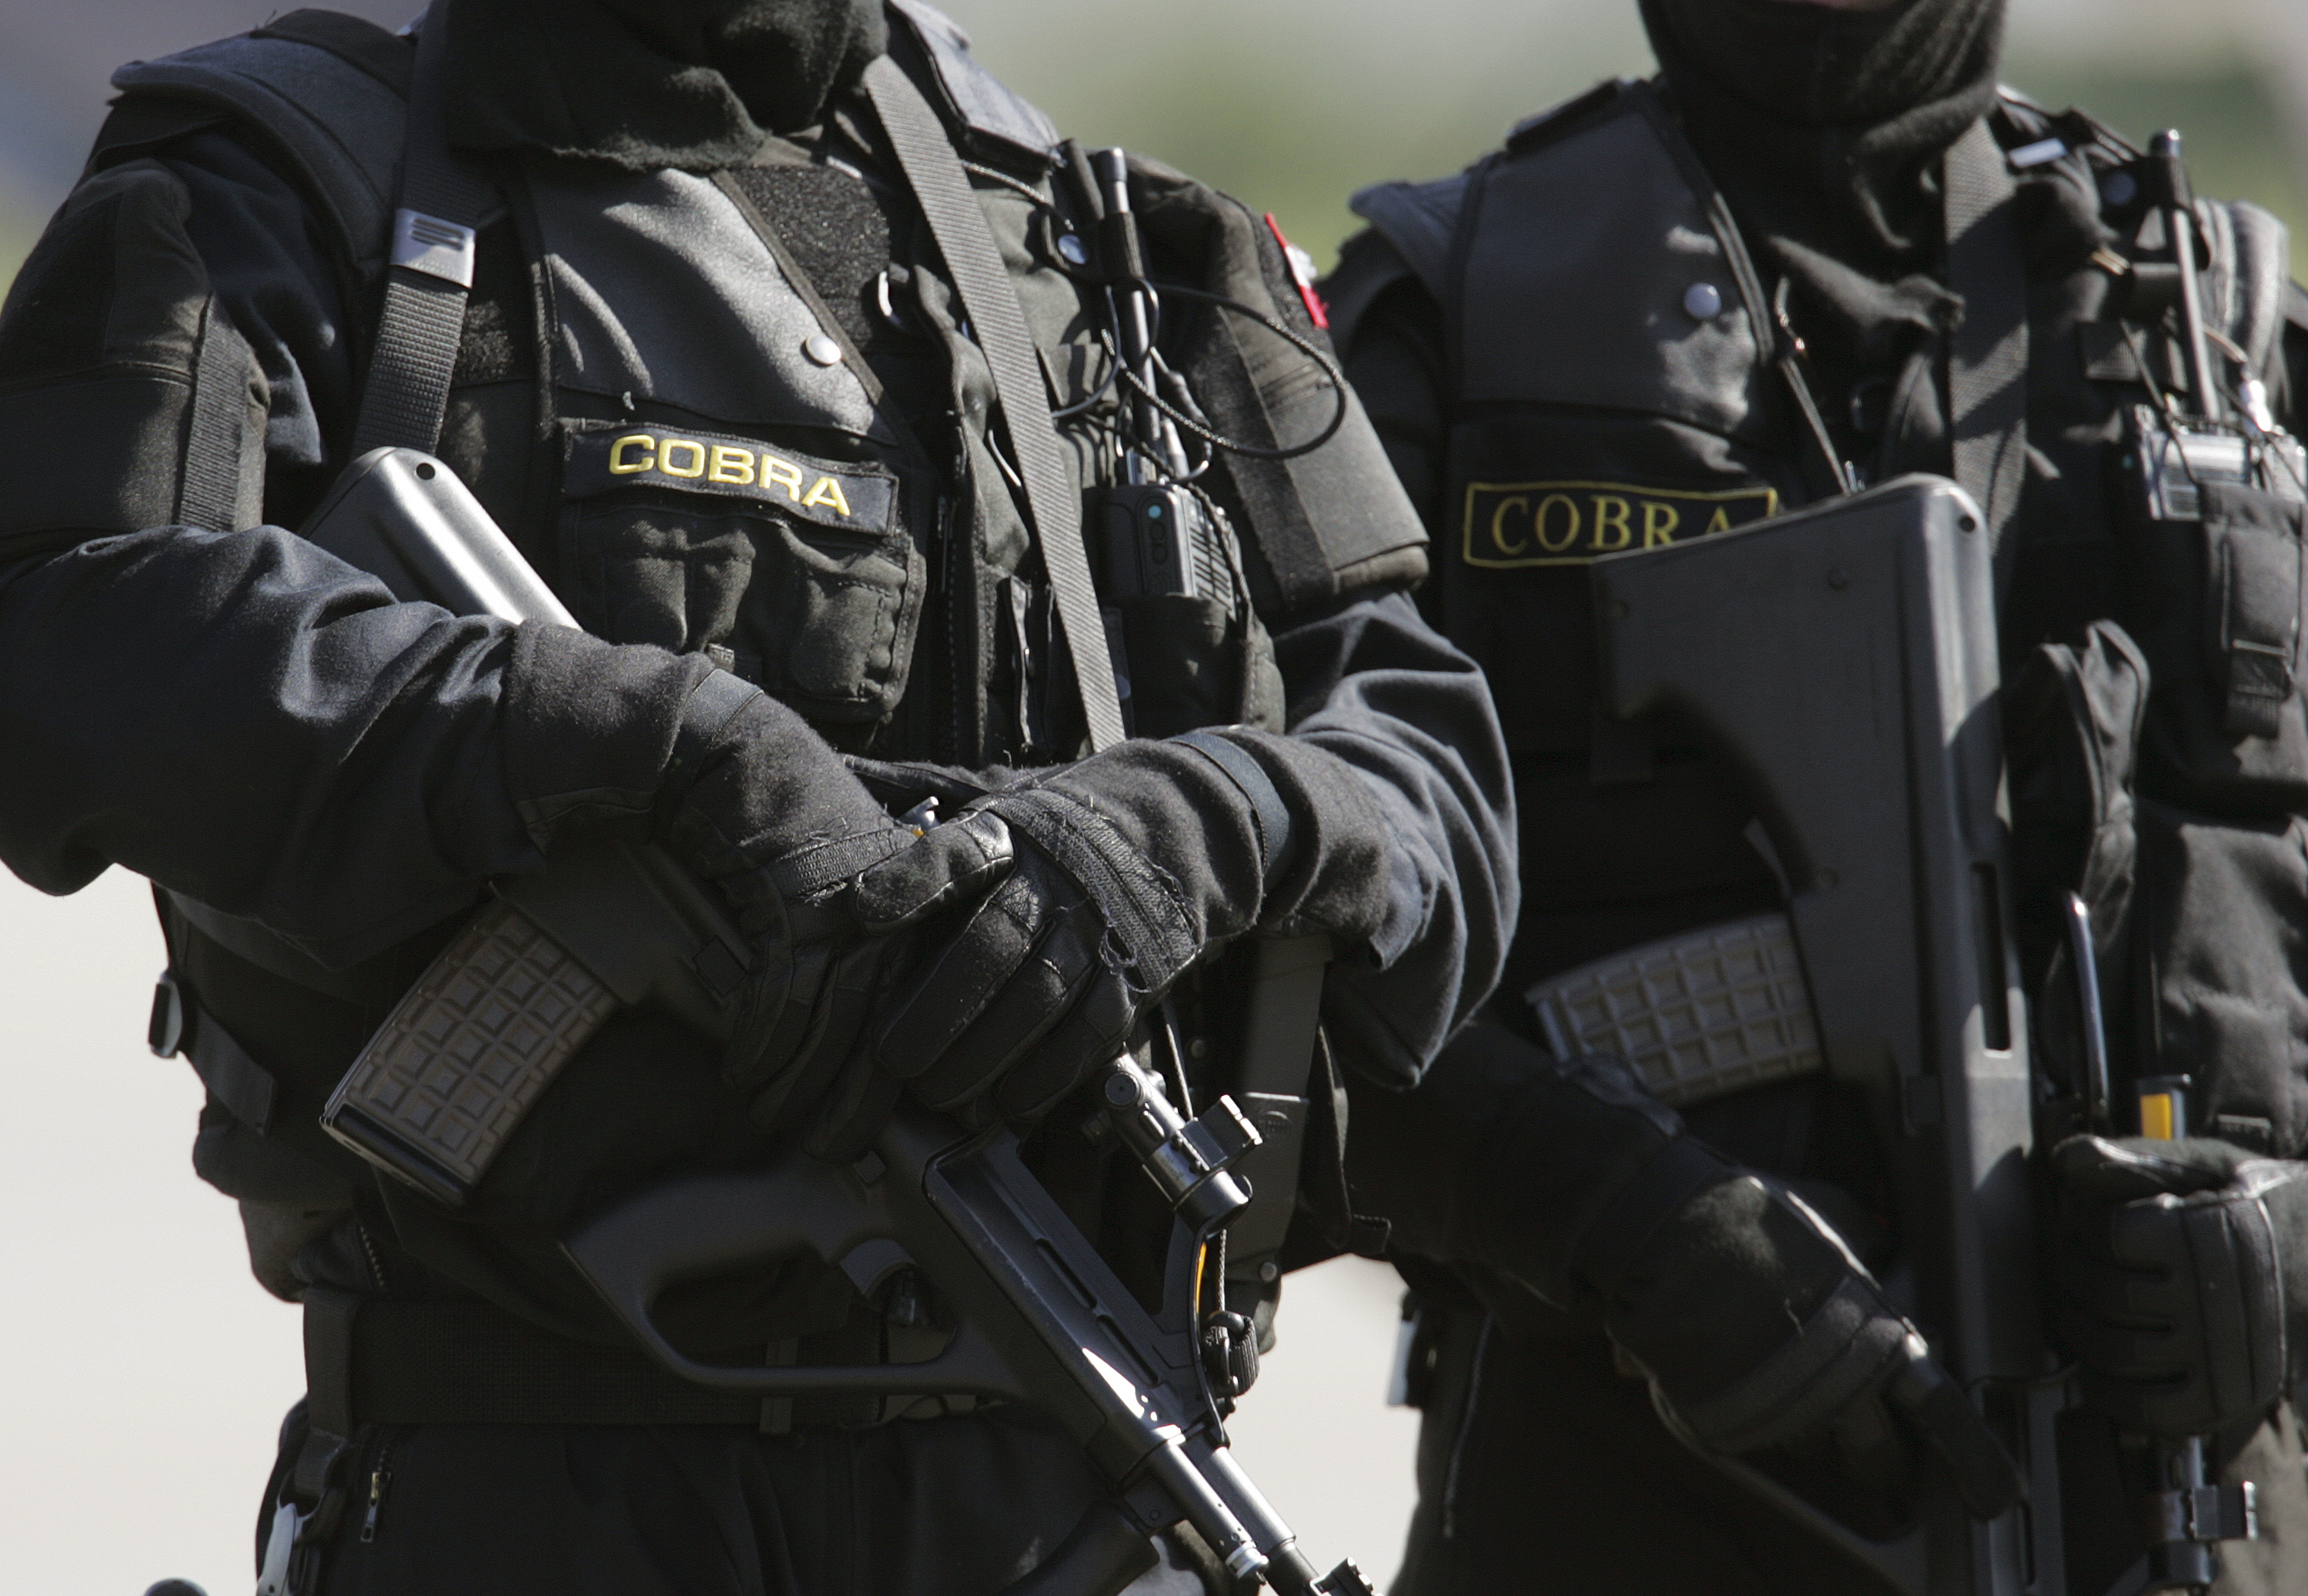 Großrazzia gegen Islamisten in Österreich: 930 Einsatzkräfte durchsuchen Häuser, Geschäfts- und Vereinsräume